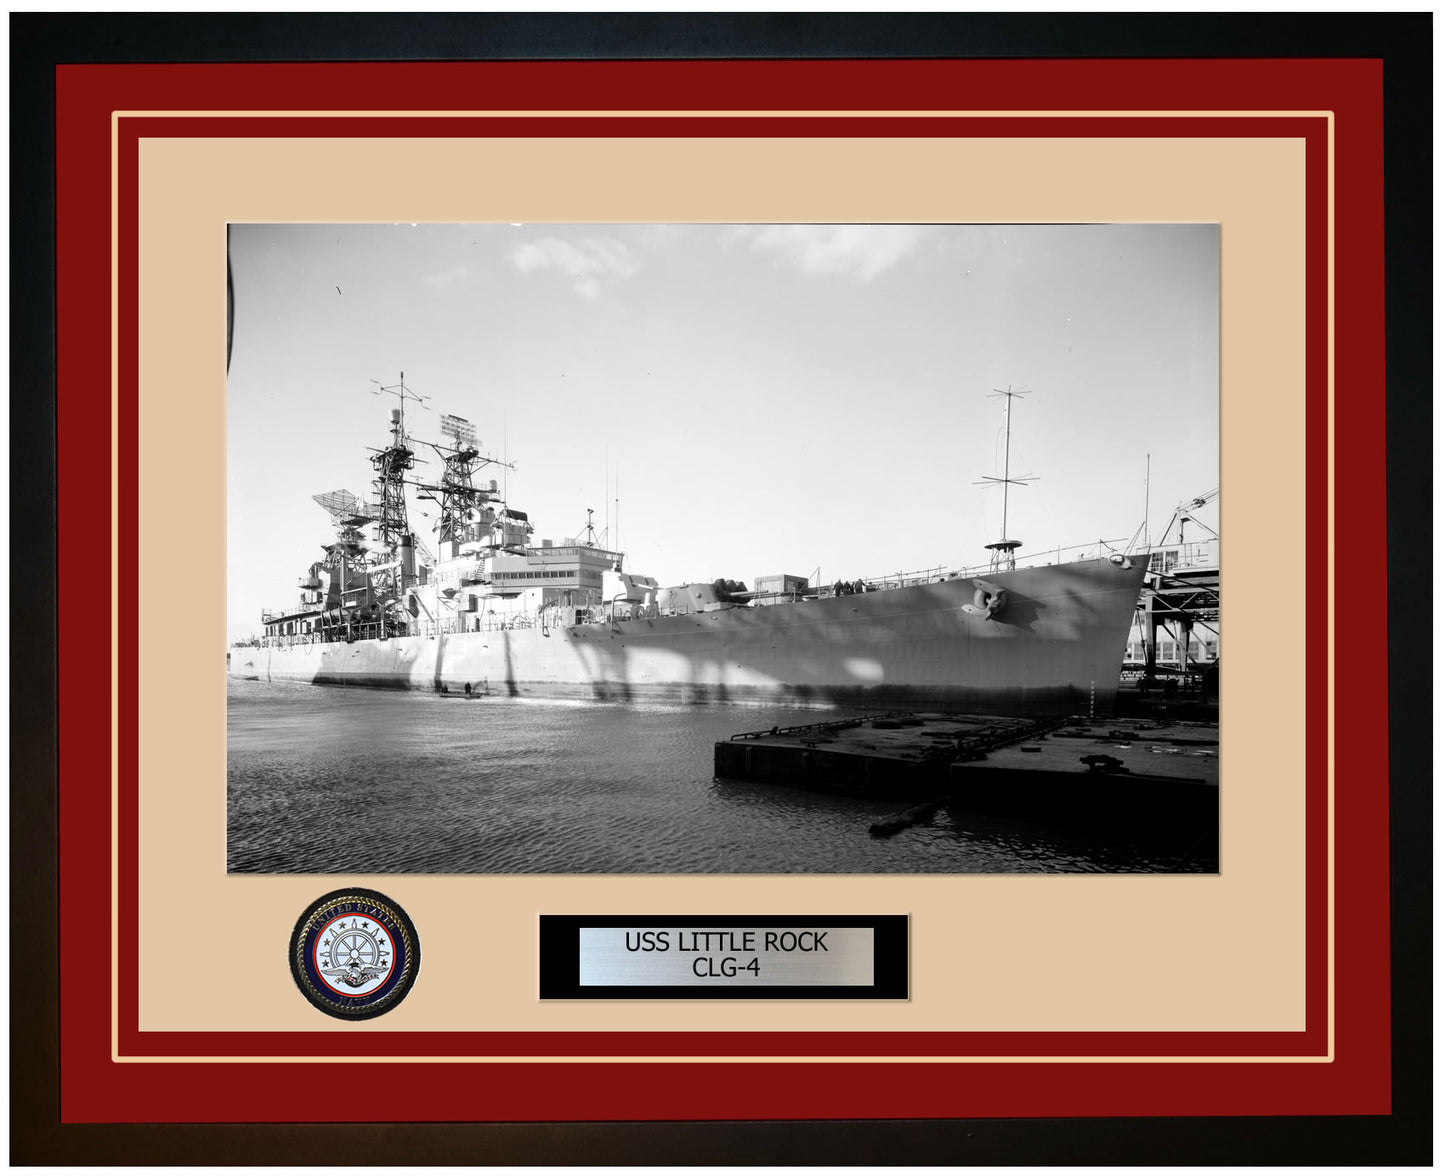 USS LITTLE ROCK CLG-4 Framed Navy Ship Photo Burgundy